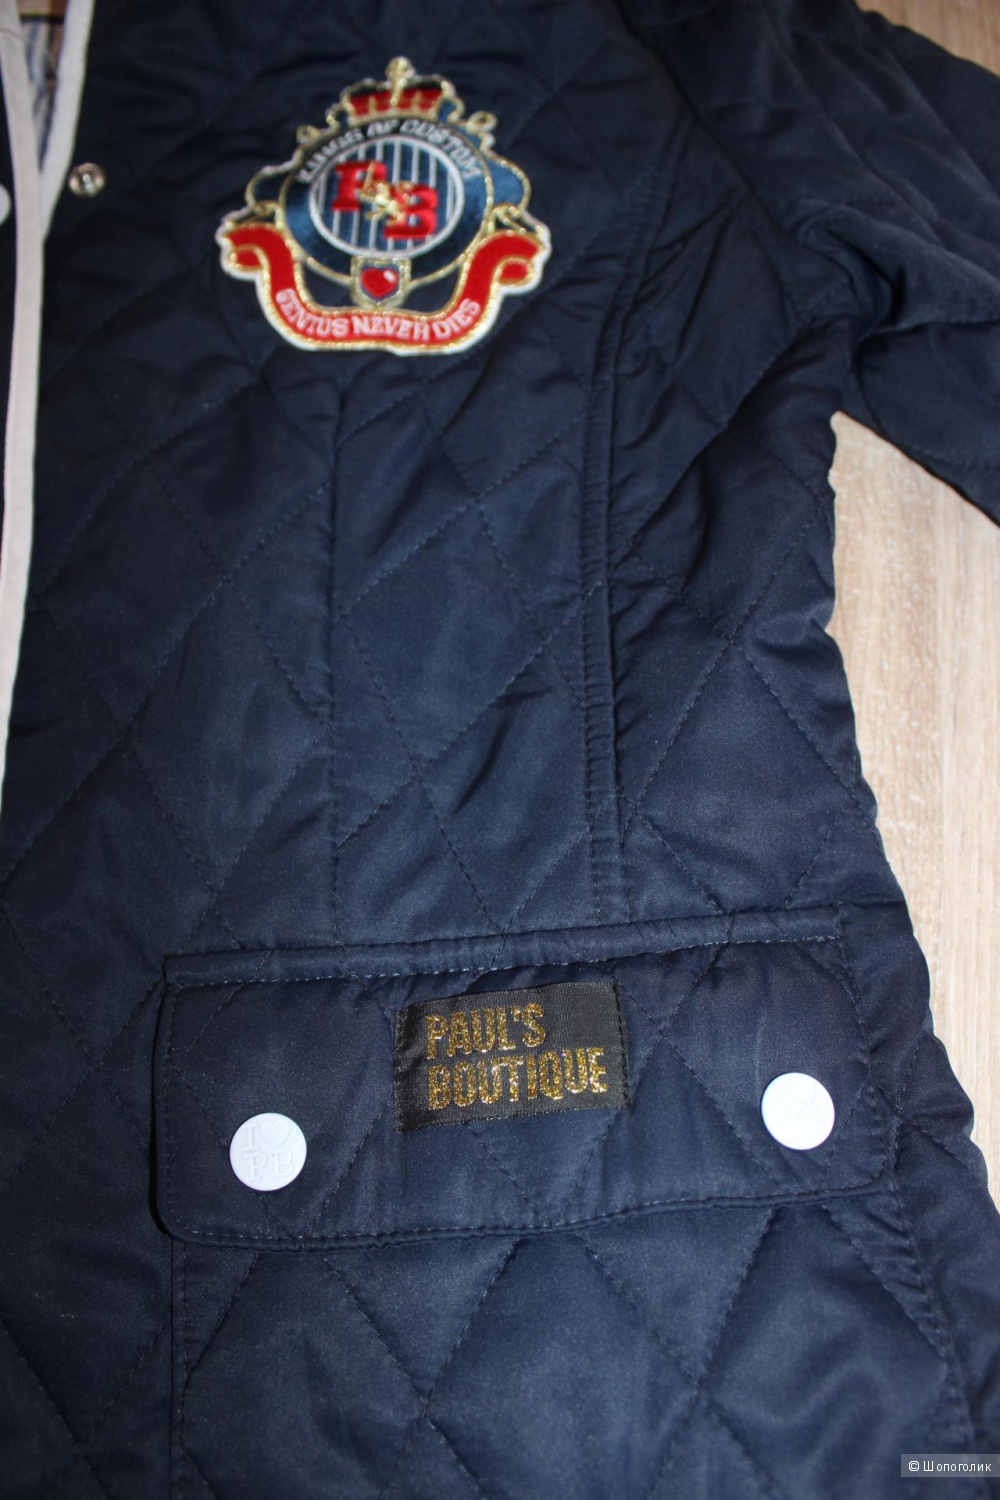 Куртка pauls boutique, размер s